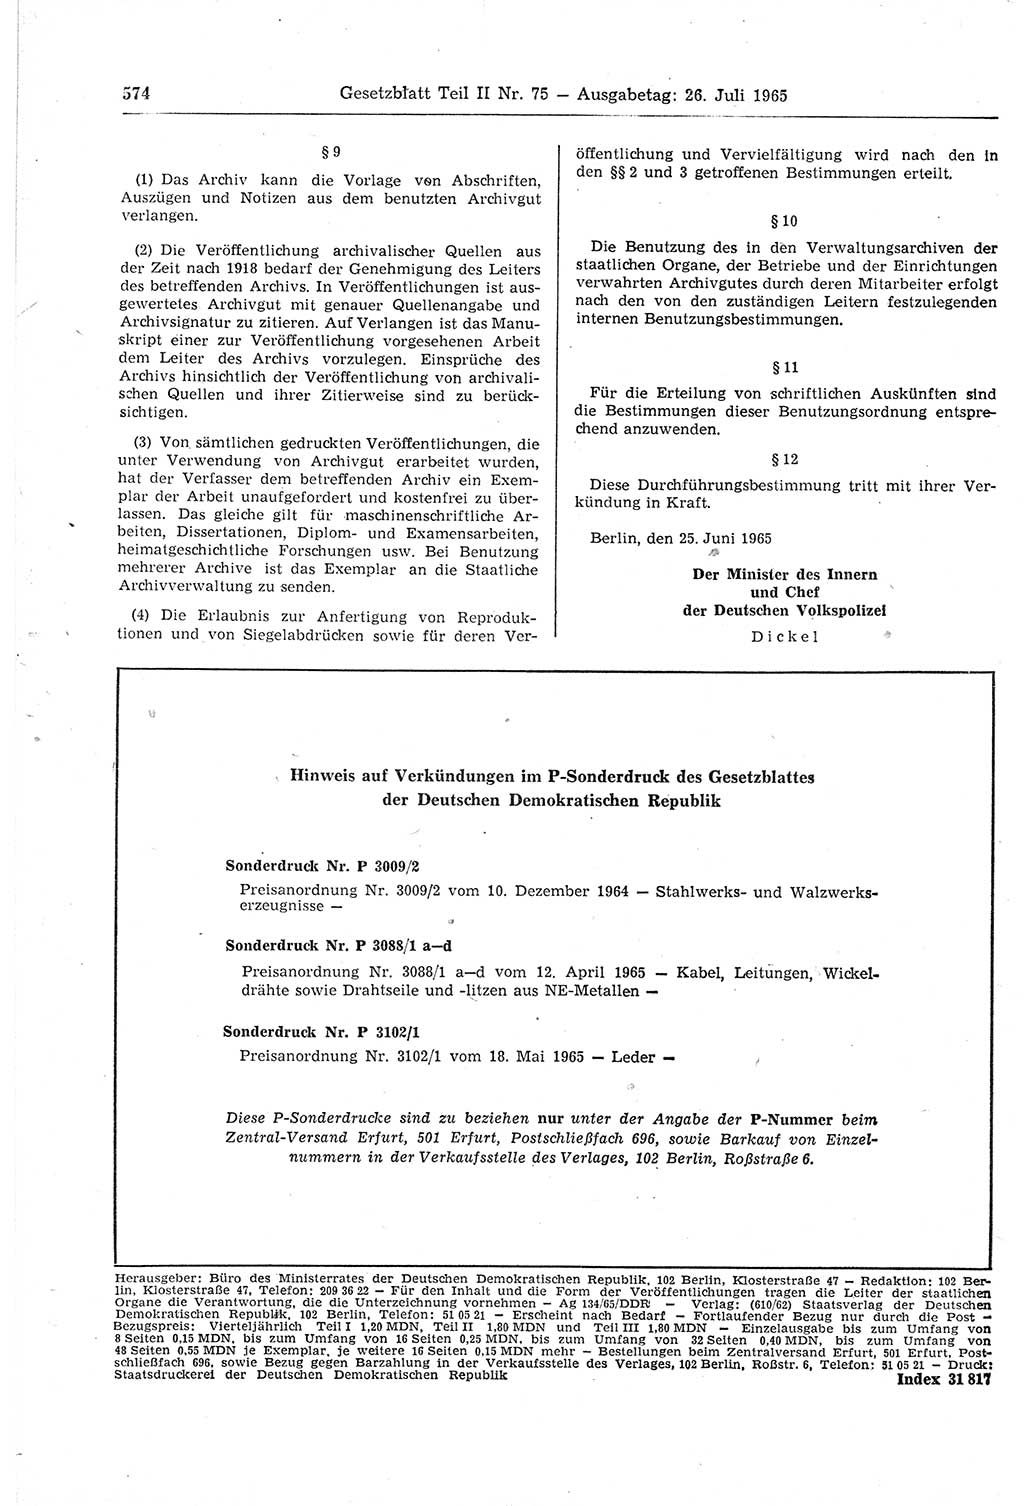 Gesetzblatt (GBl.) der Deutschen Demokratischen Republik (DDR) Teil ⅠⅠ 1965, Seite 574 (GBl. DDR ⅠⅠ 1965, S. 574)